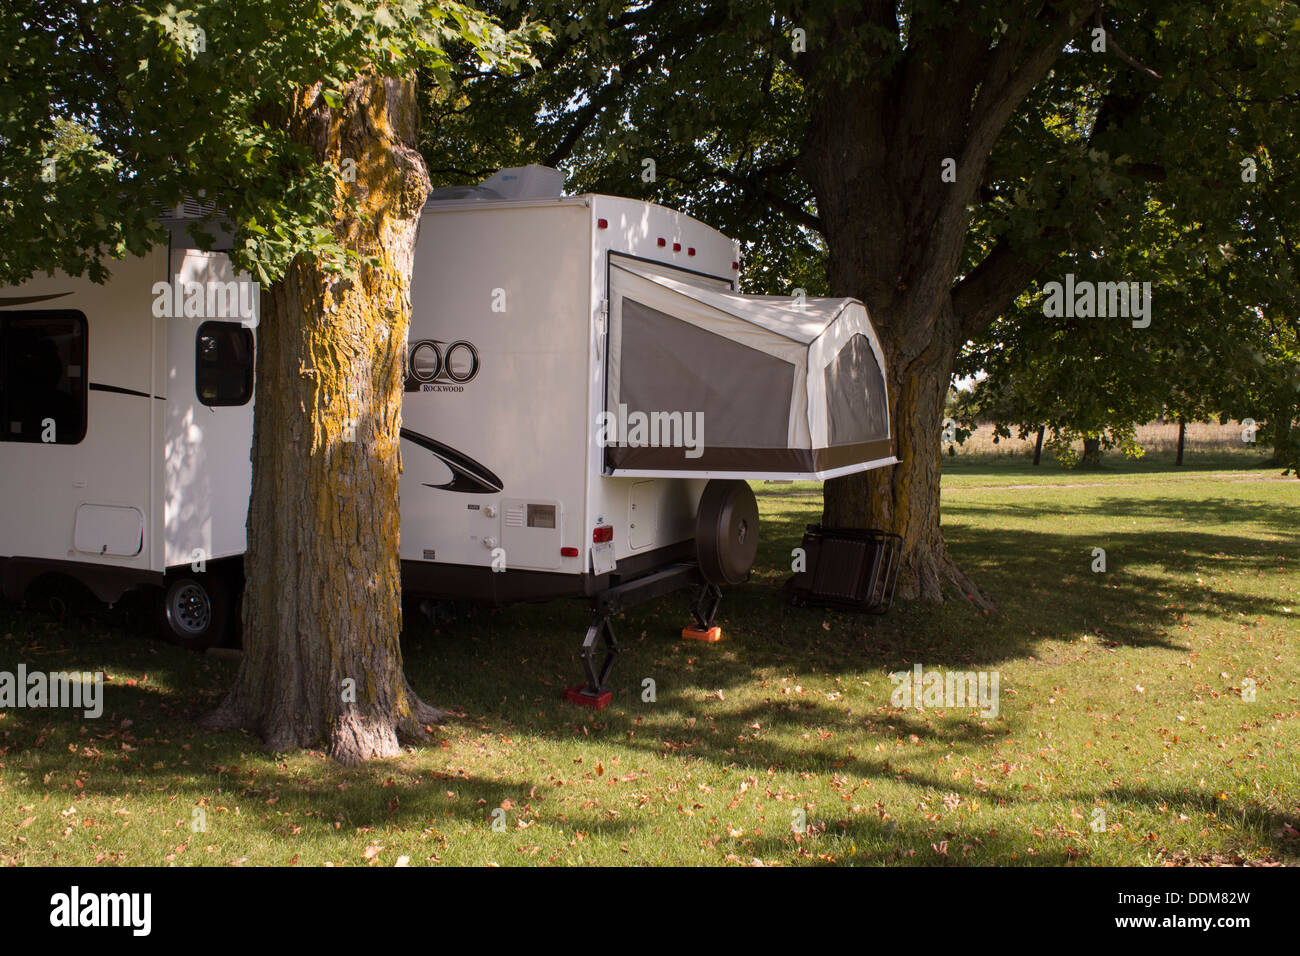 Camping-tente-roulotte garée entre deux arbres d'érable Photo Stock - Alamy